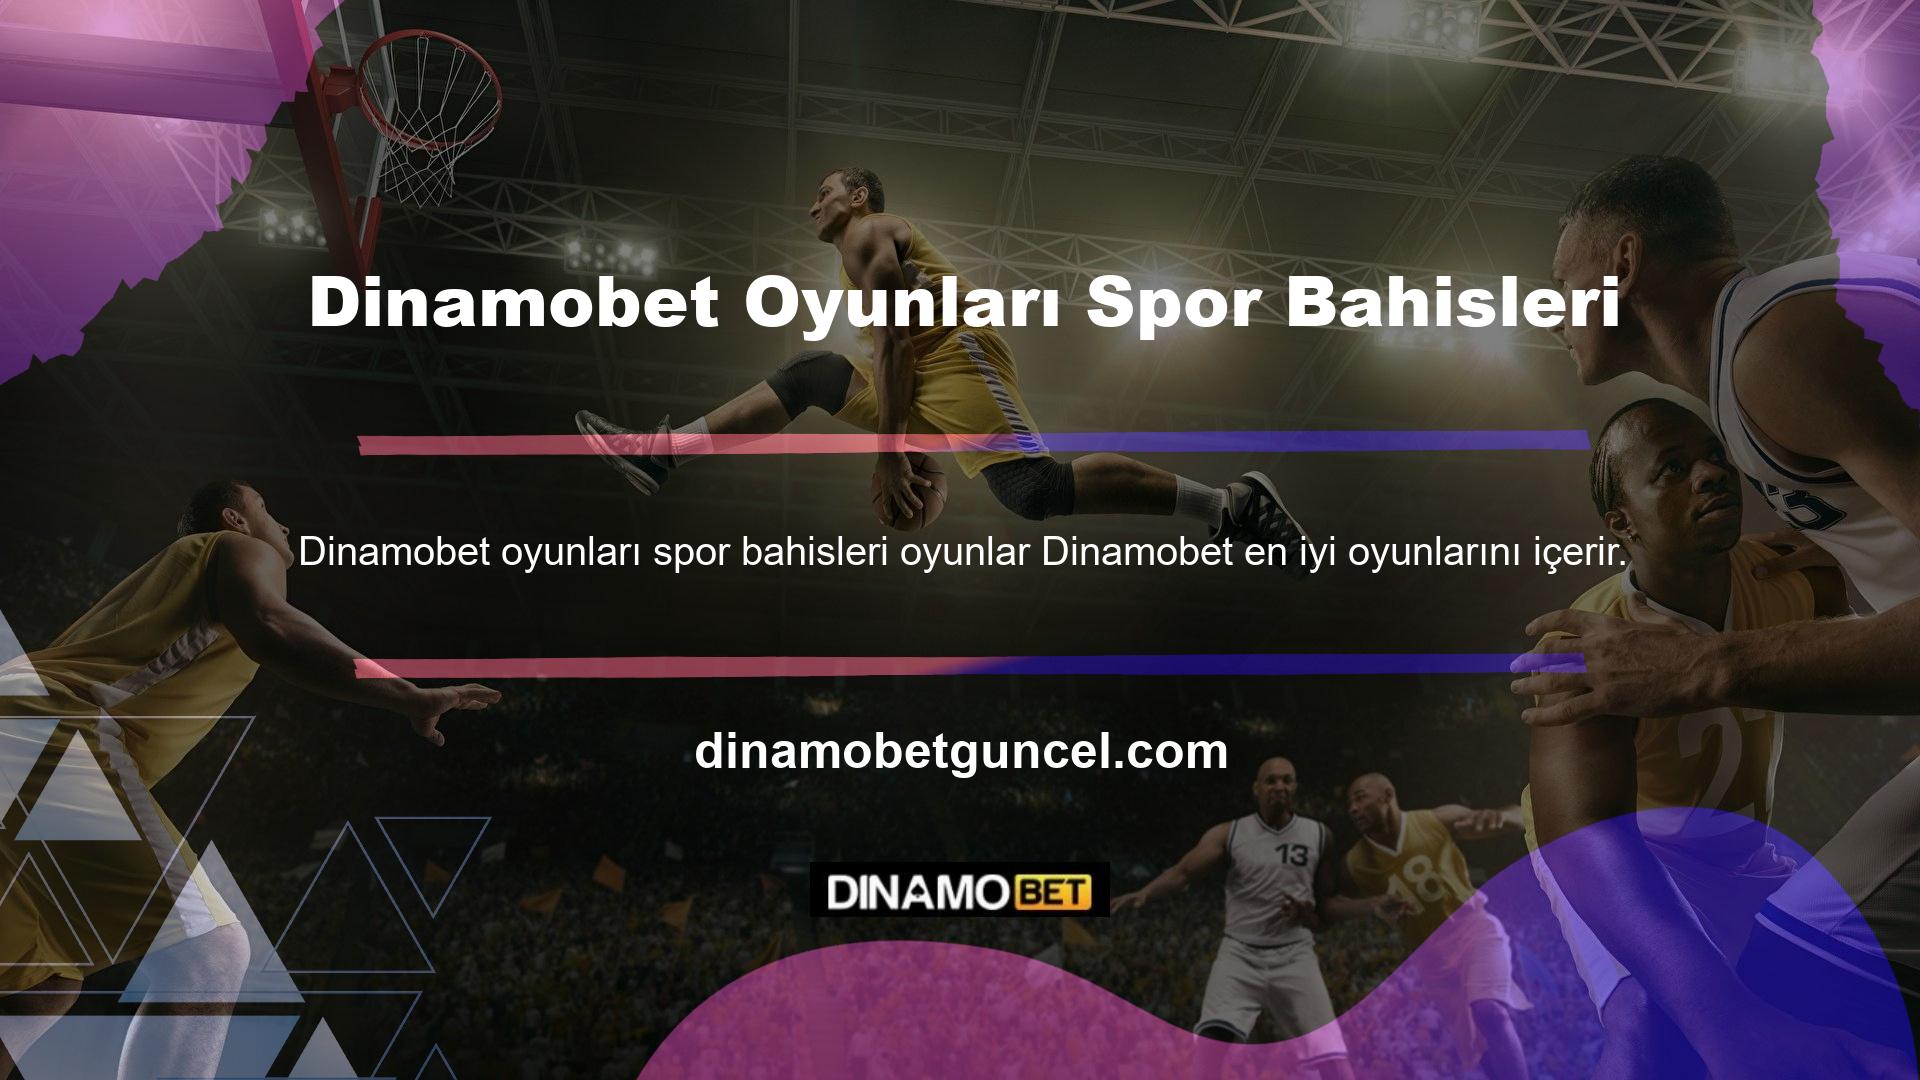 Dinamobet oyunları spor bahisleri sektördeki deneyimli oyuncular tarafından geliştirilmiştir